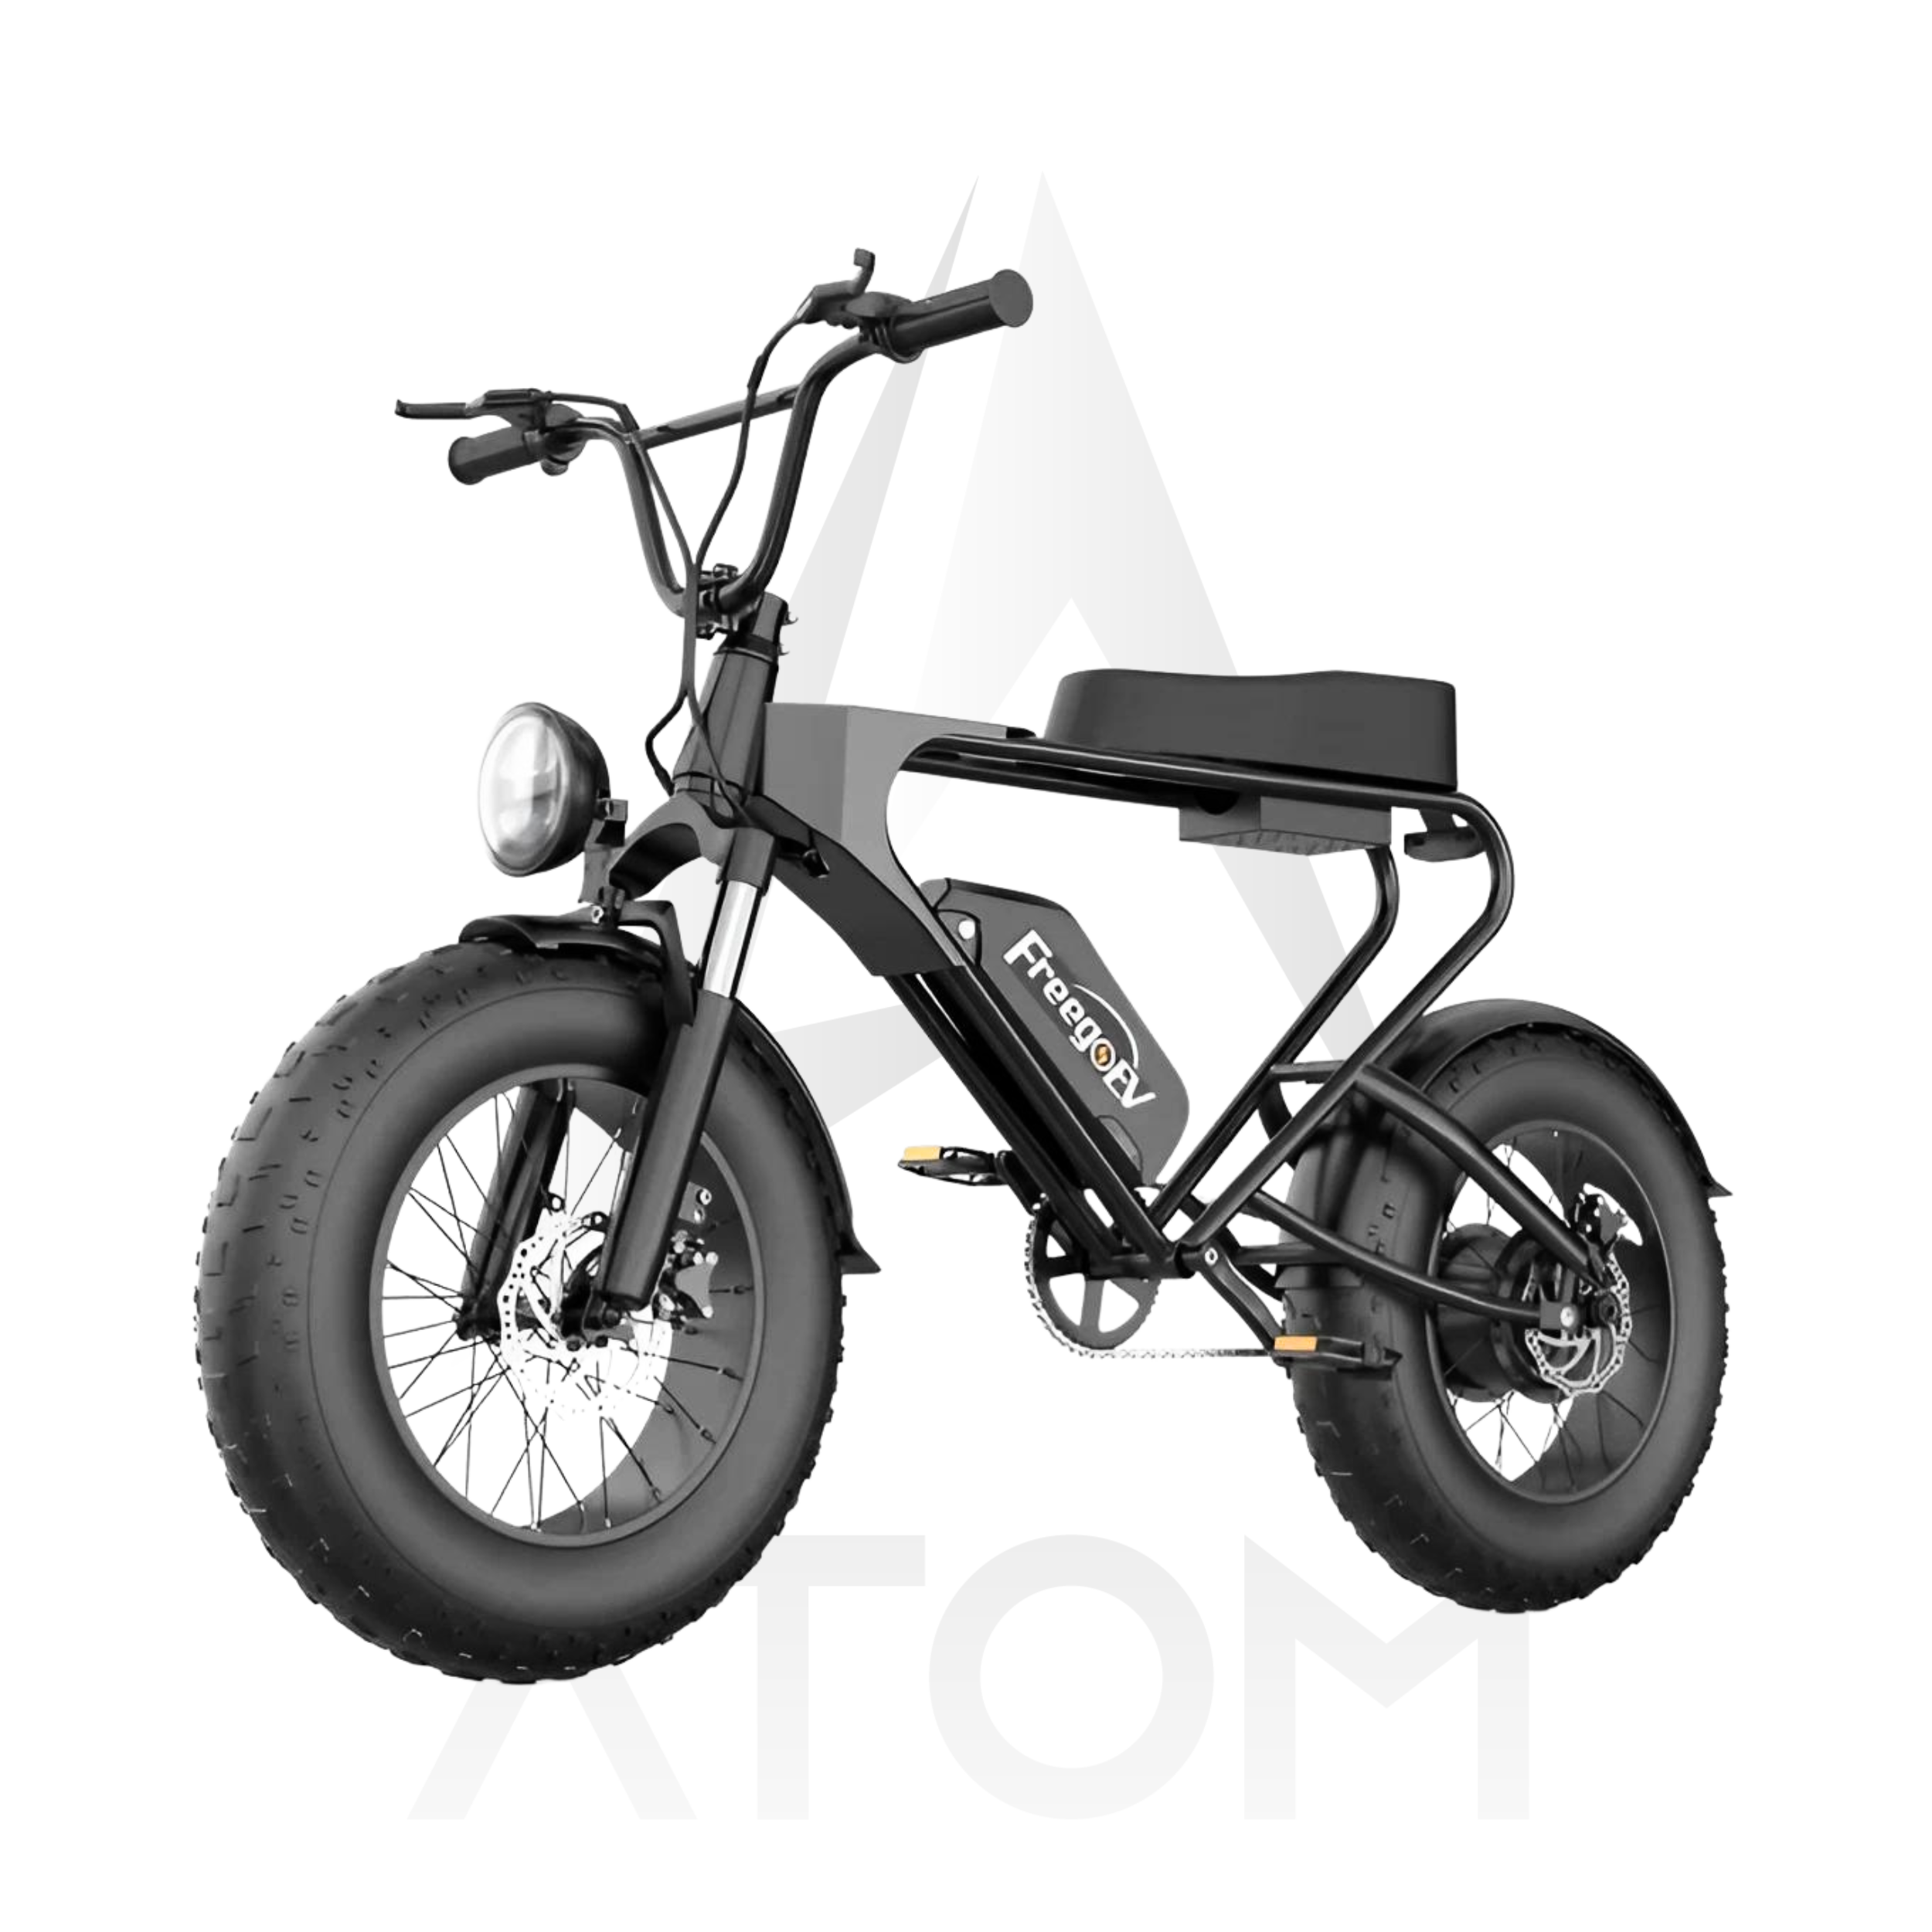 Vélo électrique Fatbike | FREEGO DK 200 | 1200 W | V-max 25 km/h | Autonomie 65 km - Atom Motors